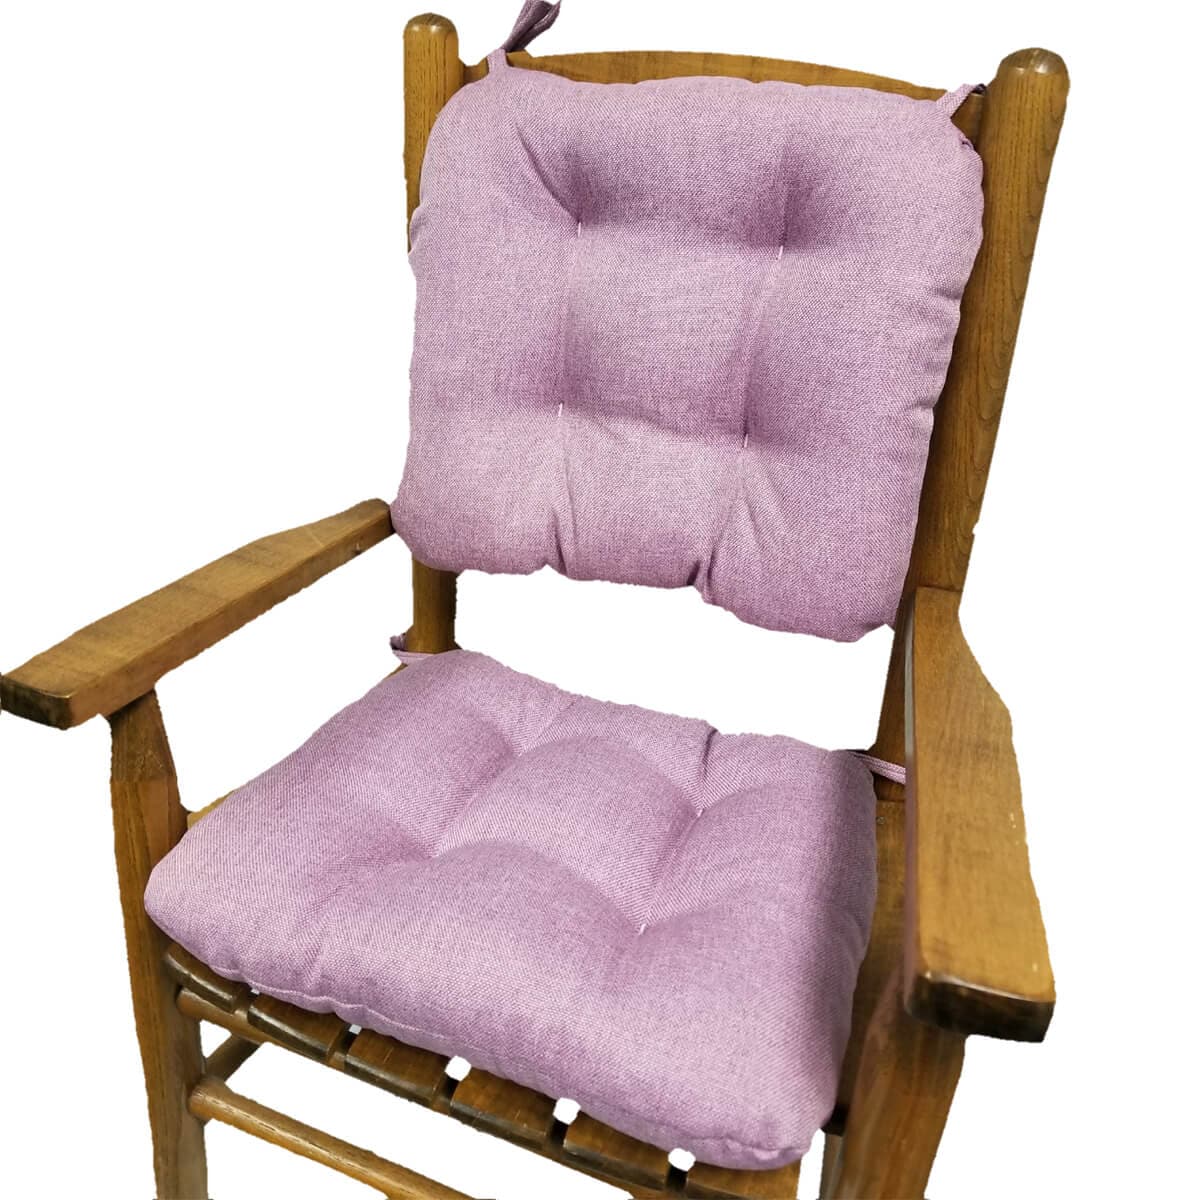 Child Rocking Chair Cushions - Hayden Lavender - Made in USA - Machine